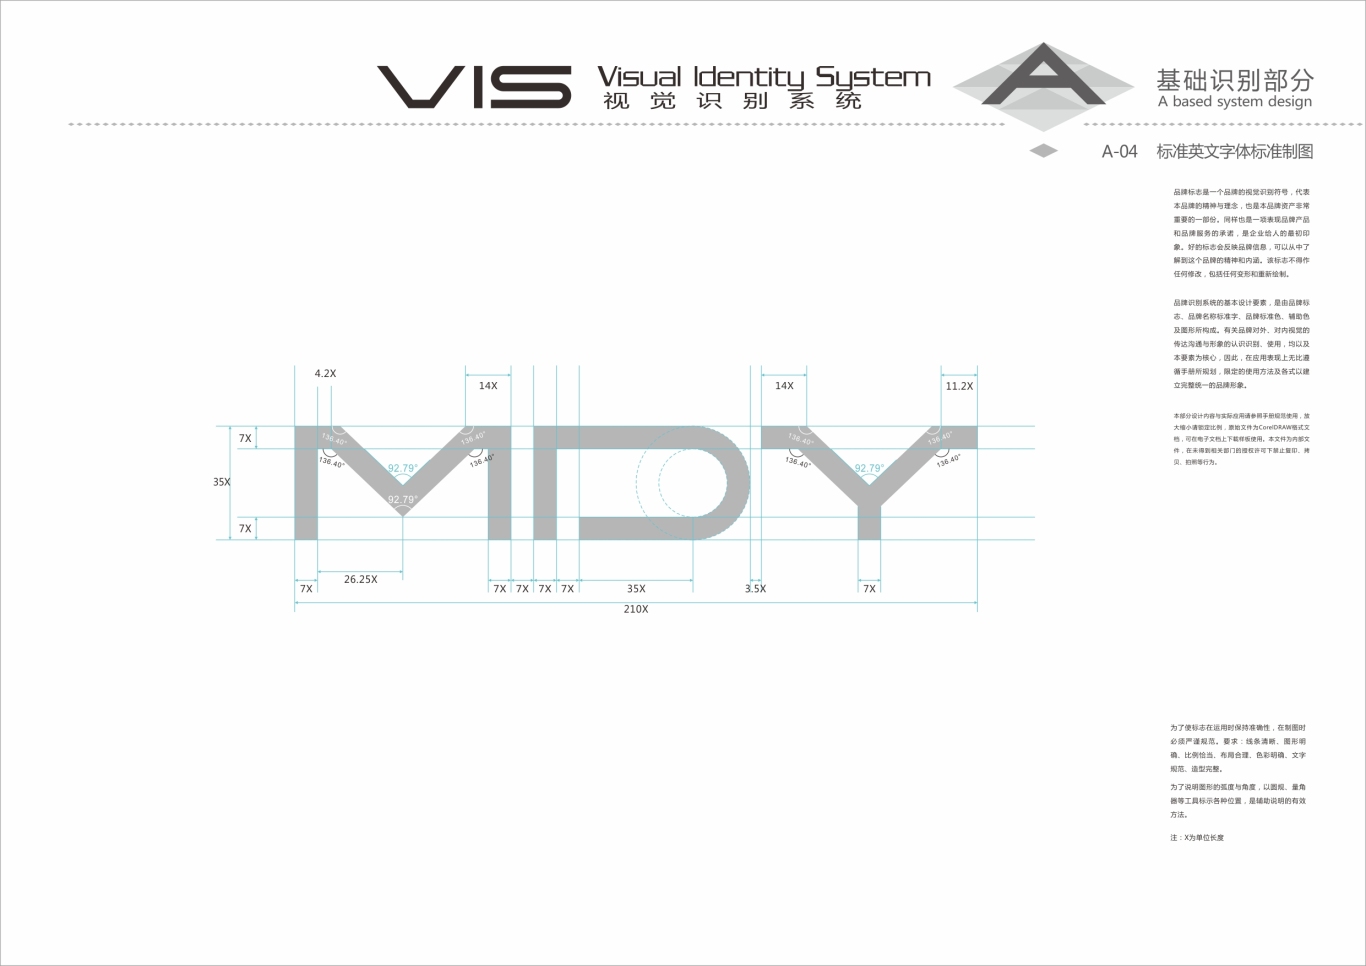 快时尚服装品牌MDY VI设计图1